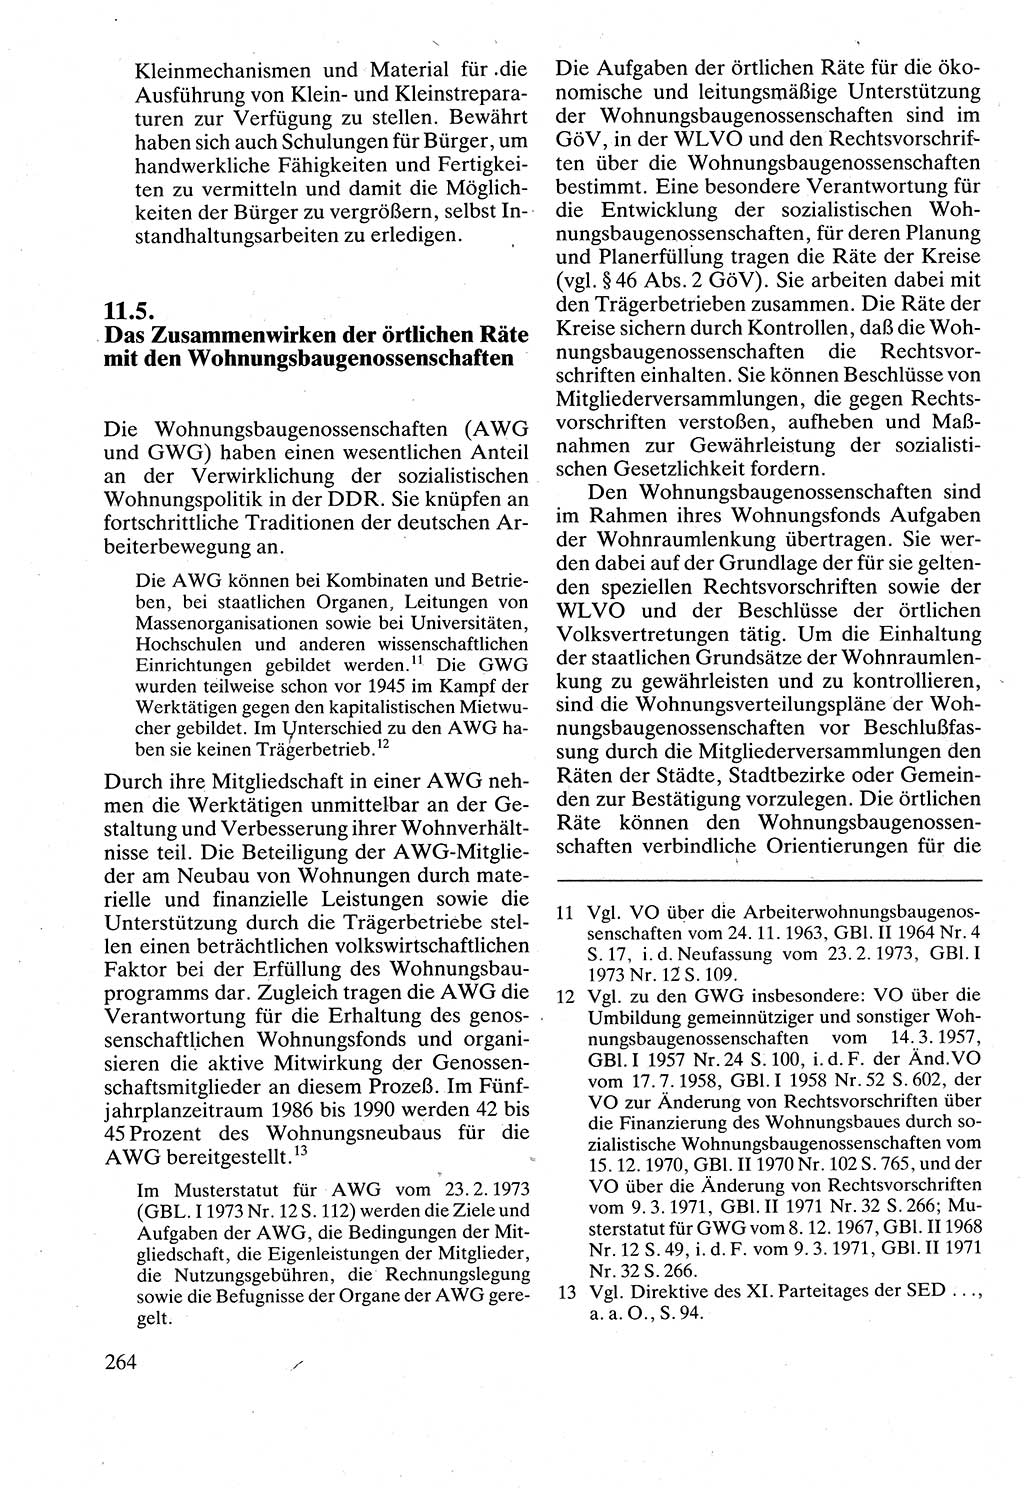 Verwaltungsrecht [Deutsche Demokratische Republik (DDR)], Lehrbuch 1988, Seite 264 (Verw.-R. DDR Lb. 1988, S. 264)